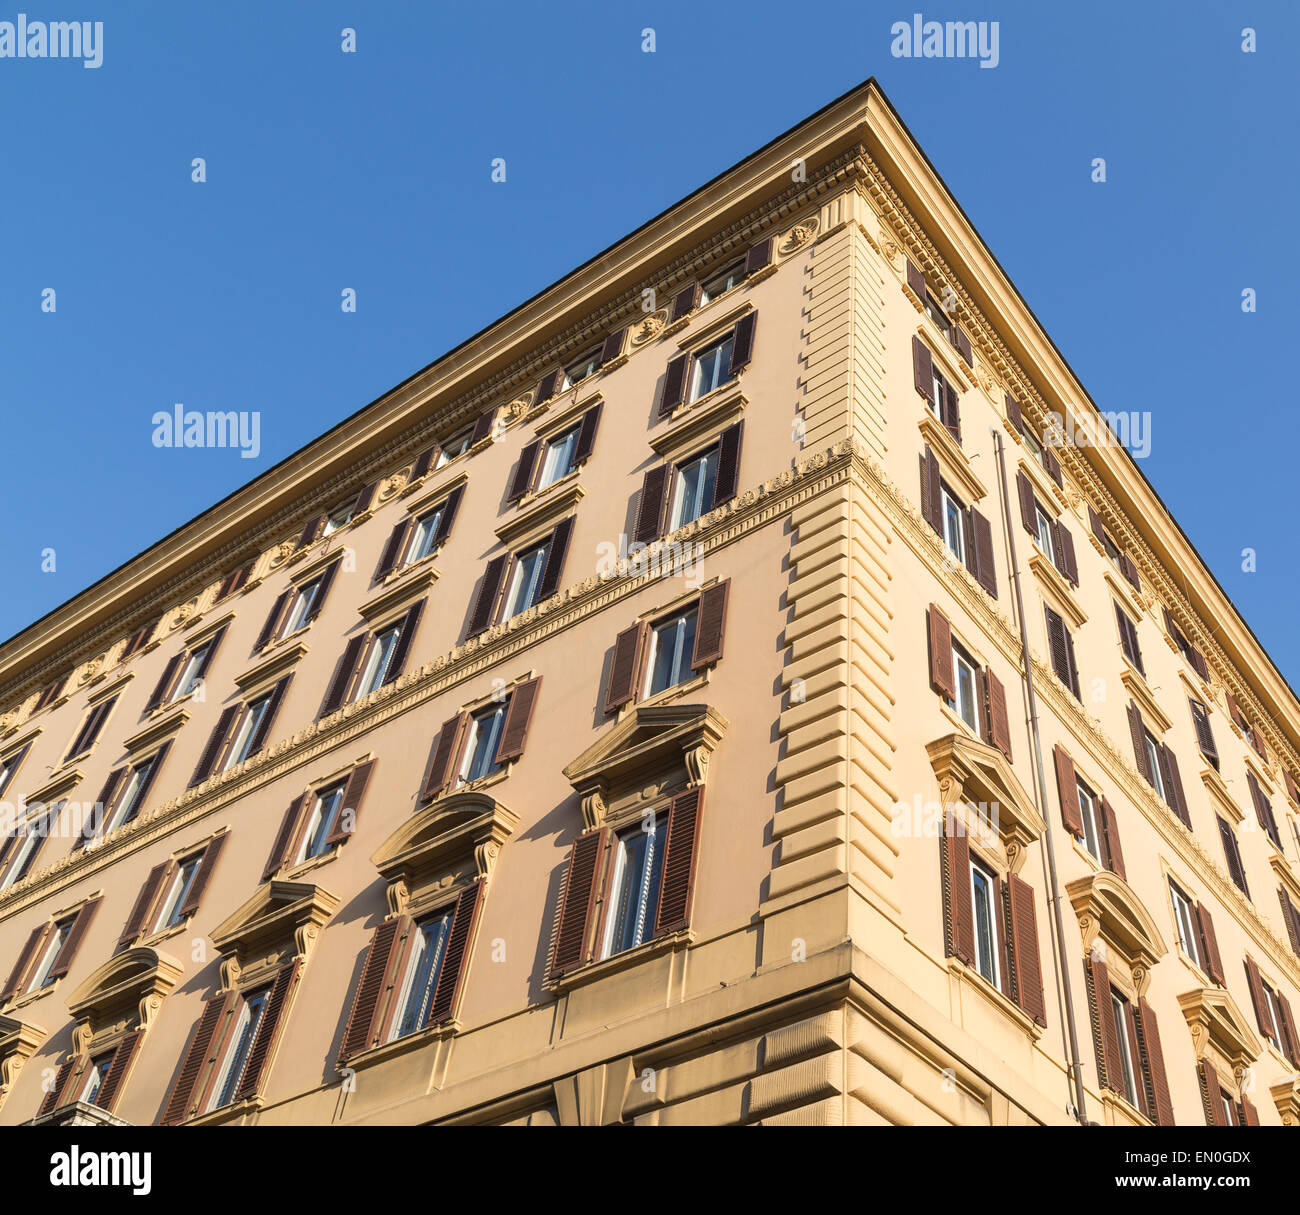 Un design tipico degli edifici a Roma mostra l'esterno dell'edificio. La costruzione mostrata ha un colore beige esterno e tapparelle su Foto Stock